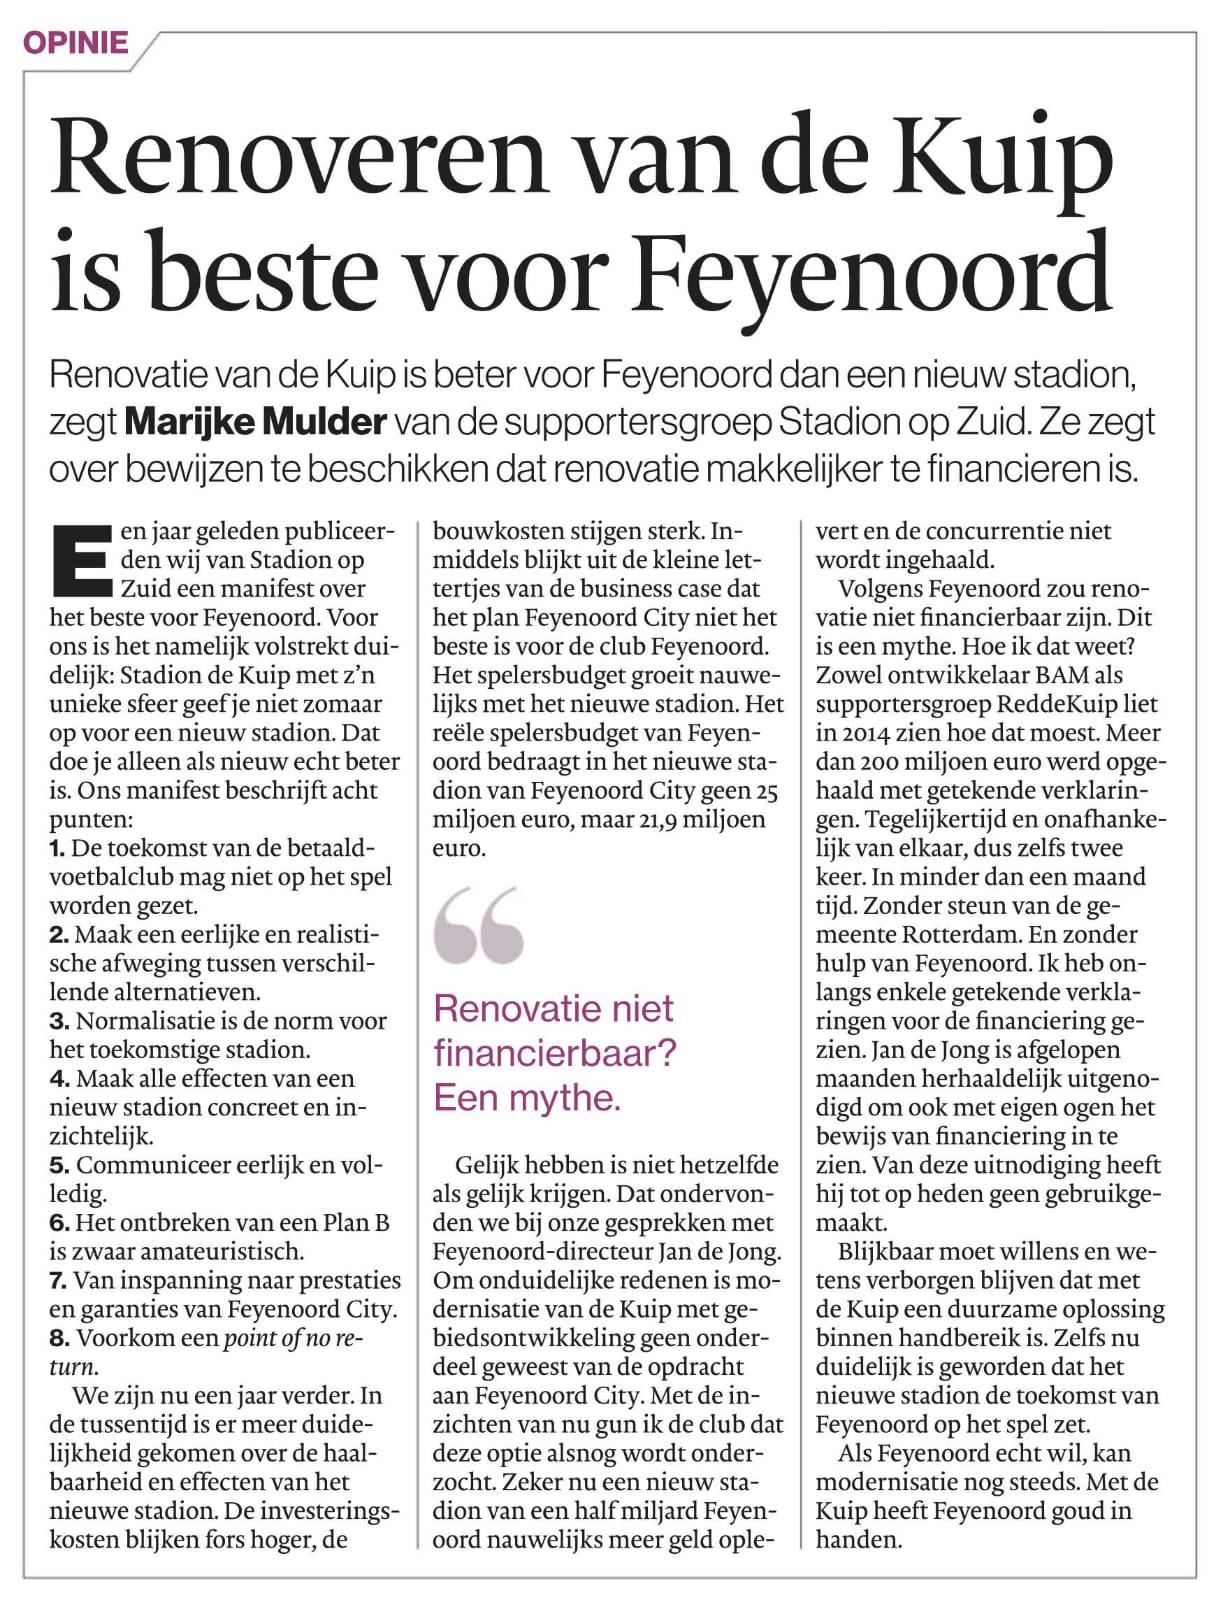 Stadionopzuid-Marijke-Mulder-Renovatie van De Kuip is beter voor Feyenoord